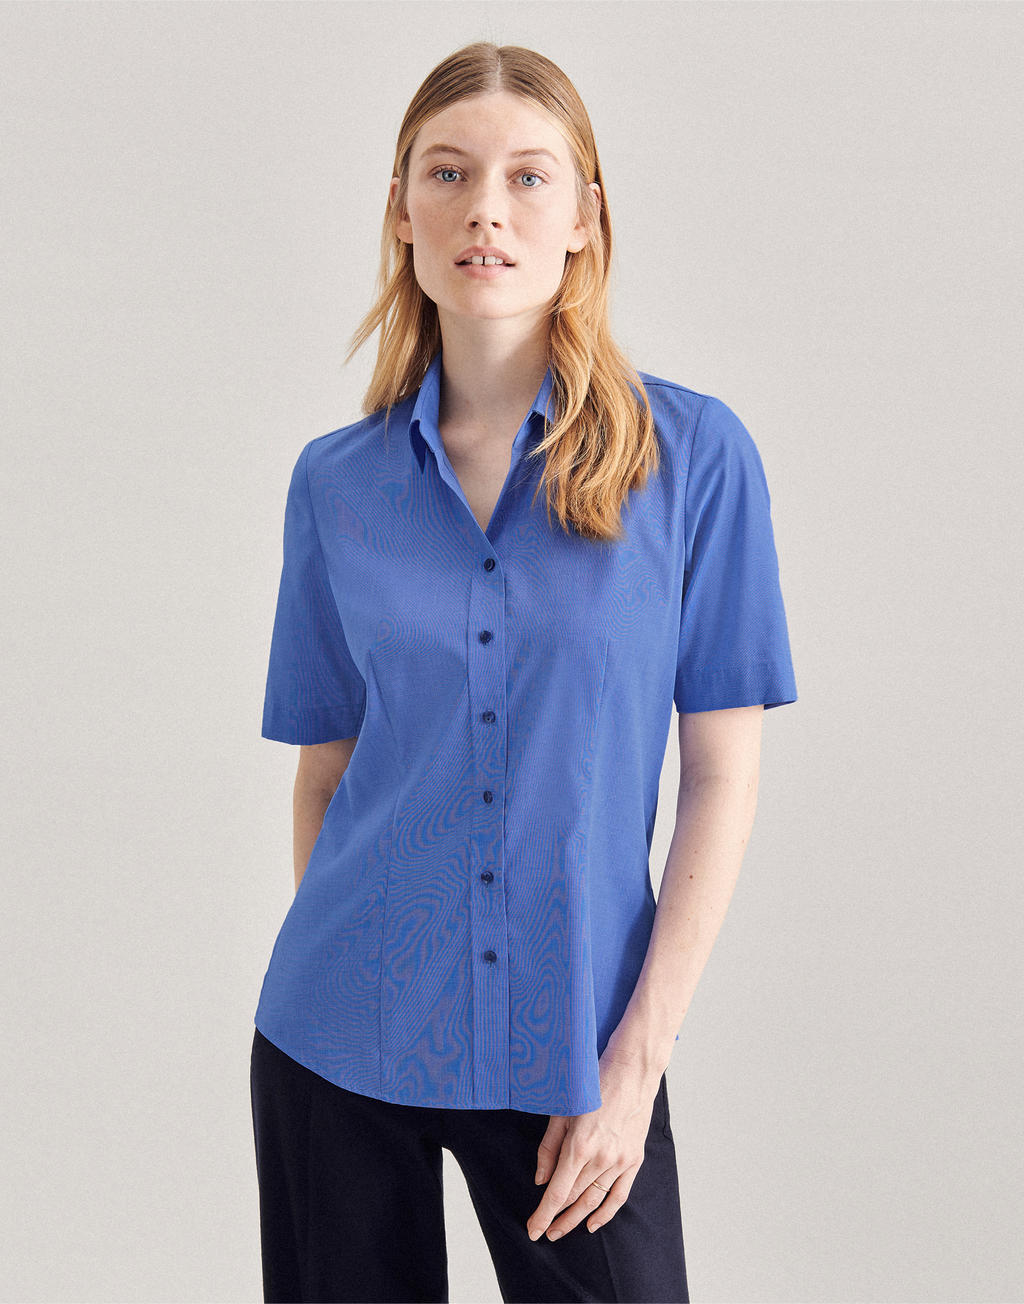 Fit Kurzarm Basic-Shirts Bluse Modern kaufen Seidensticker |